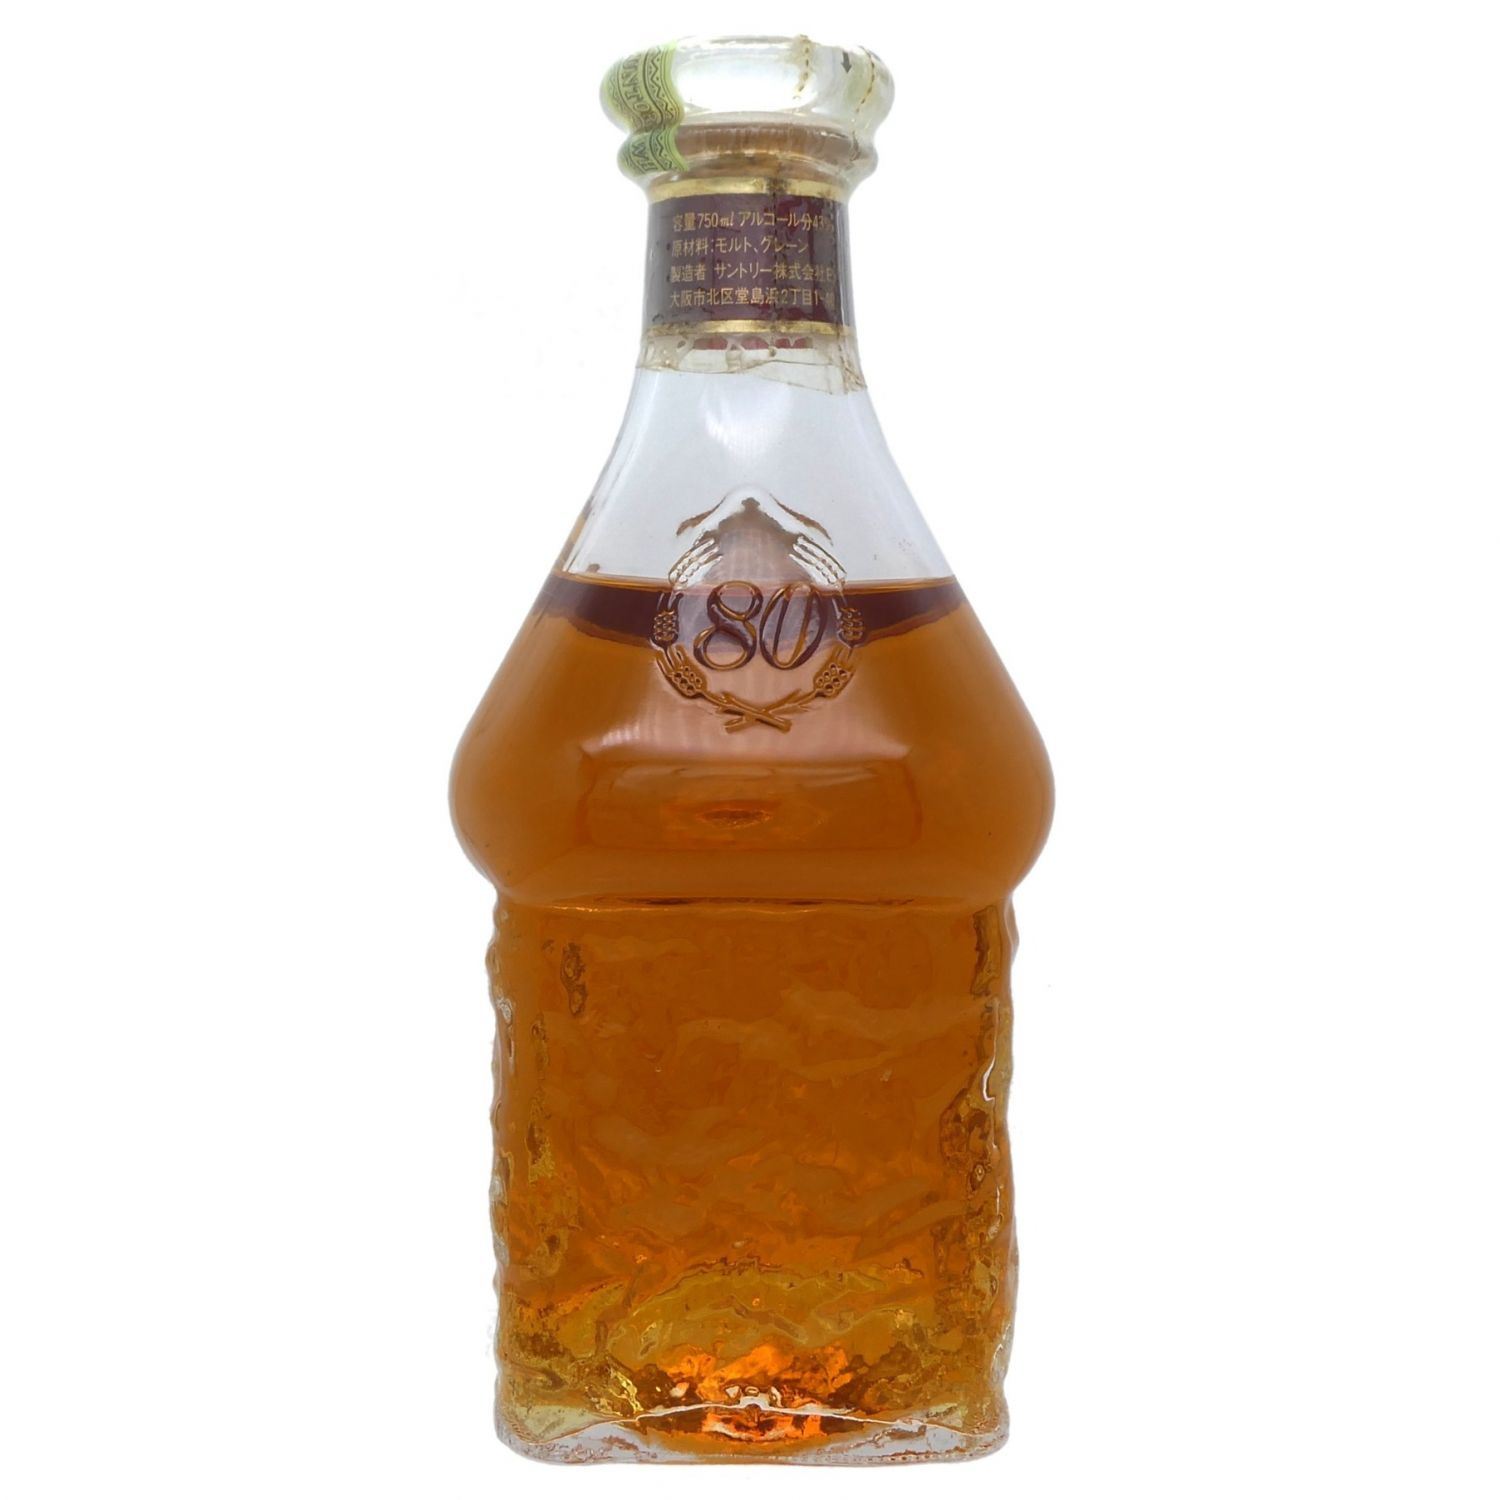 br>サントリー ウイスキー エクセレンス 43% 750ml／Suntory Whisky